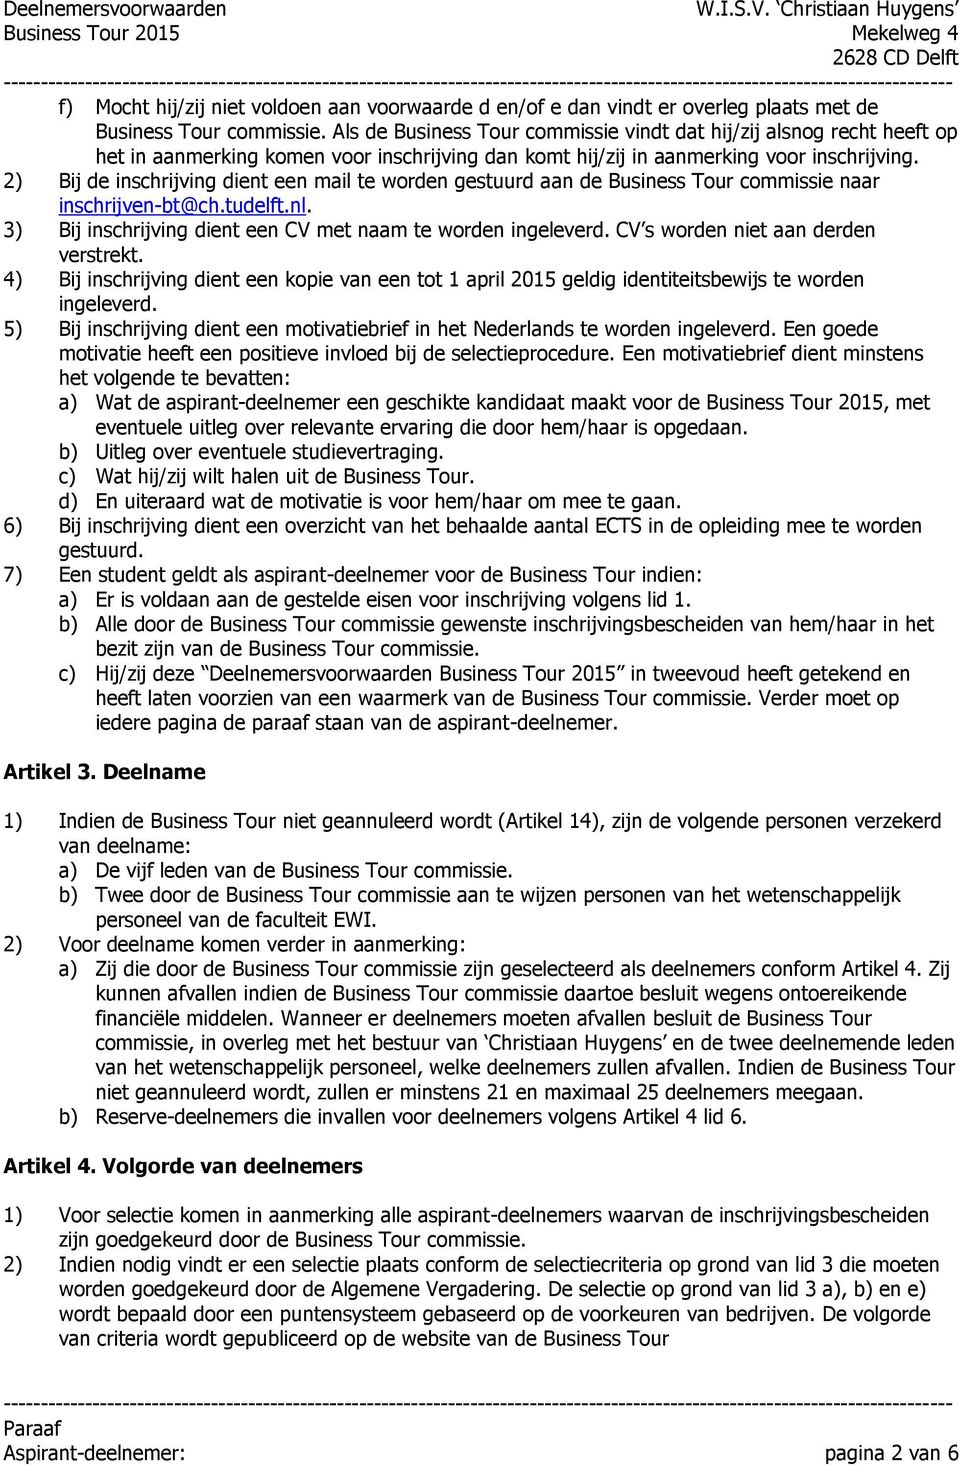 2) Bij de inschrijving dient een mail te worden gestuurd aan de Business Tour commissie naar inschrijven-bt@ch.tudelft.nl. 3) Bij inschrijving dient een CV met naam te worden ingeleverd.